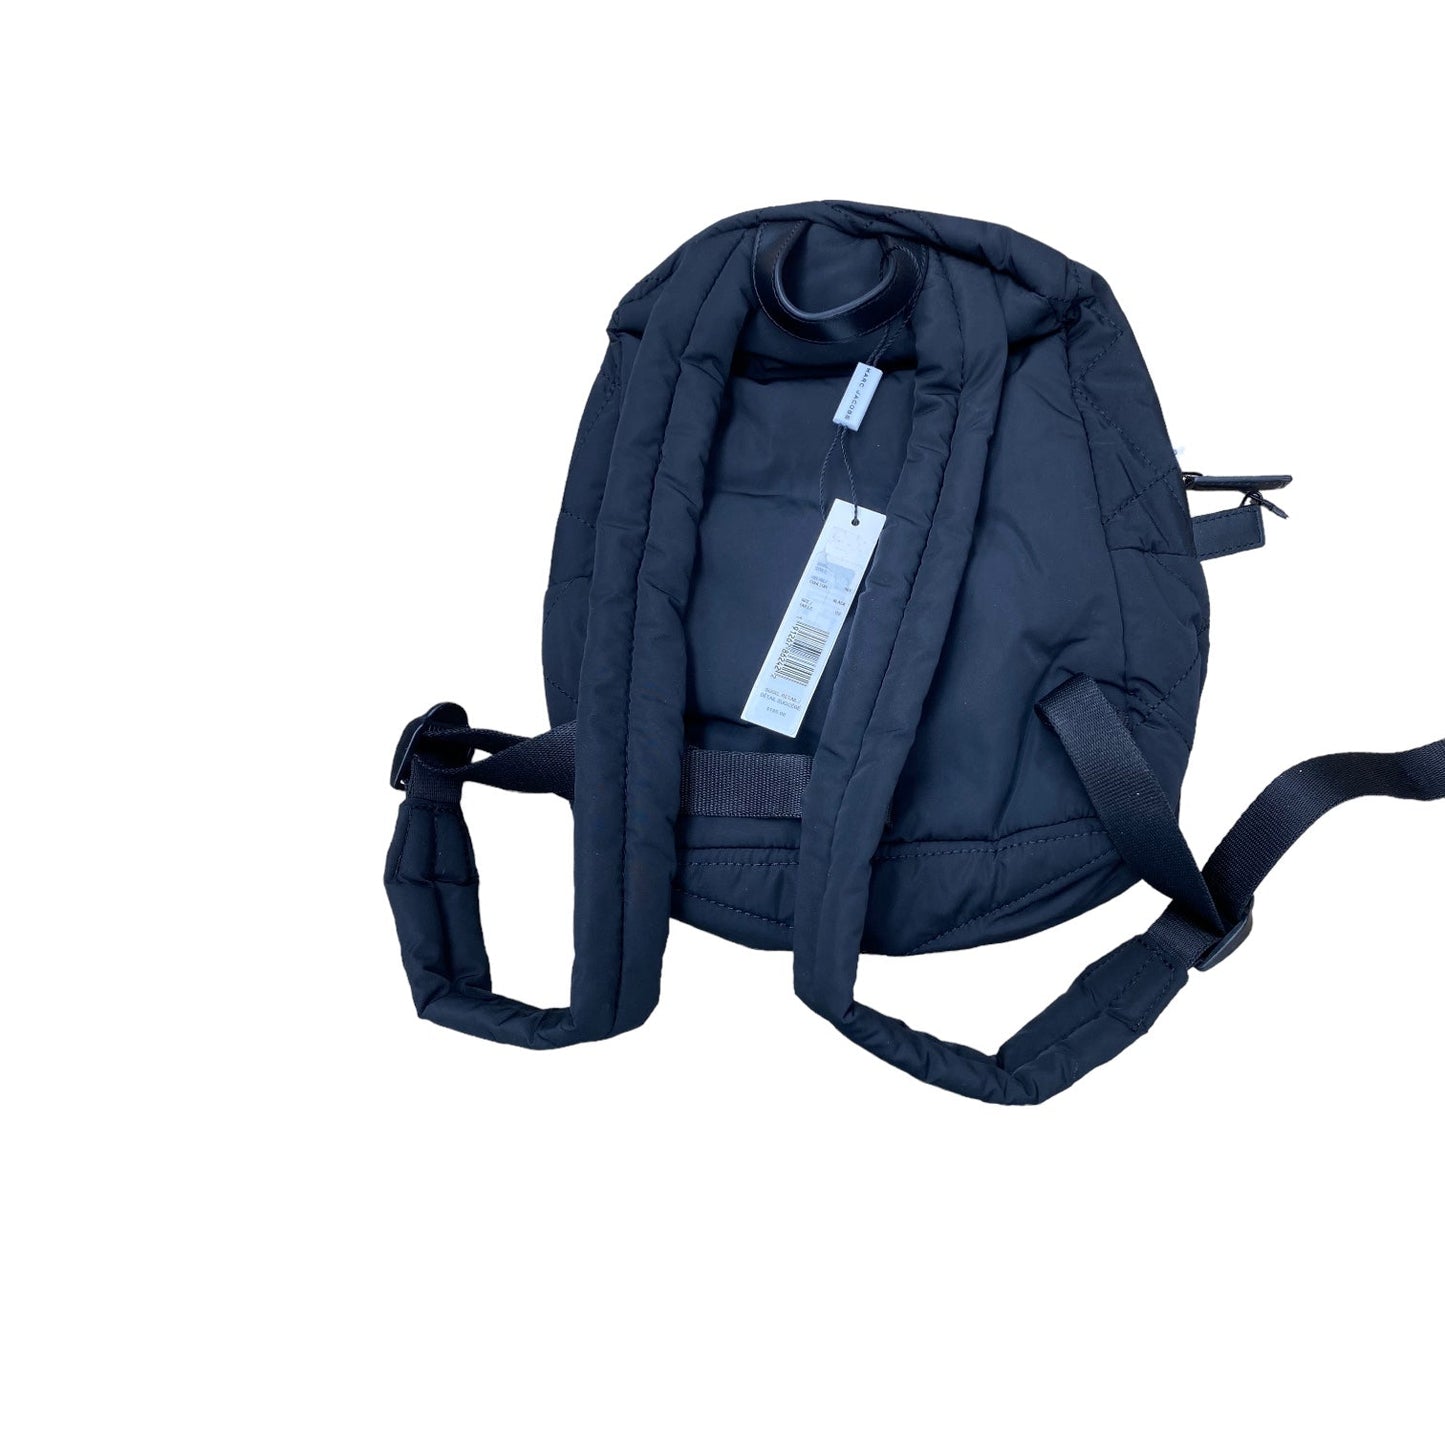 Backpack Designer Marc Jacobs, Size Medium